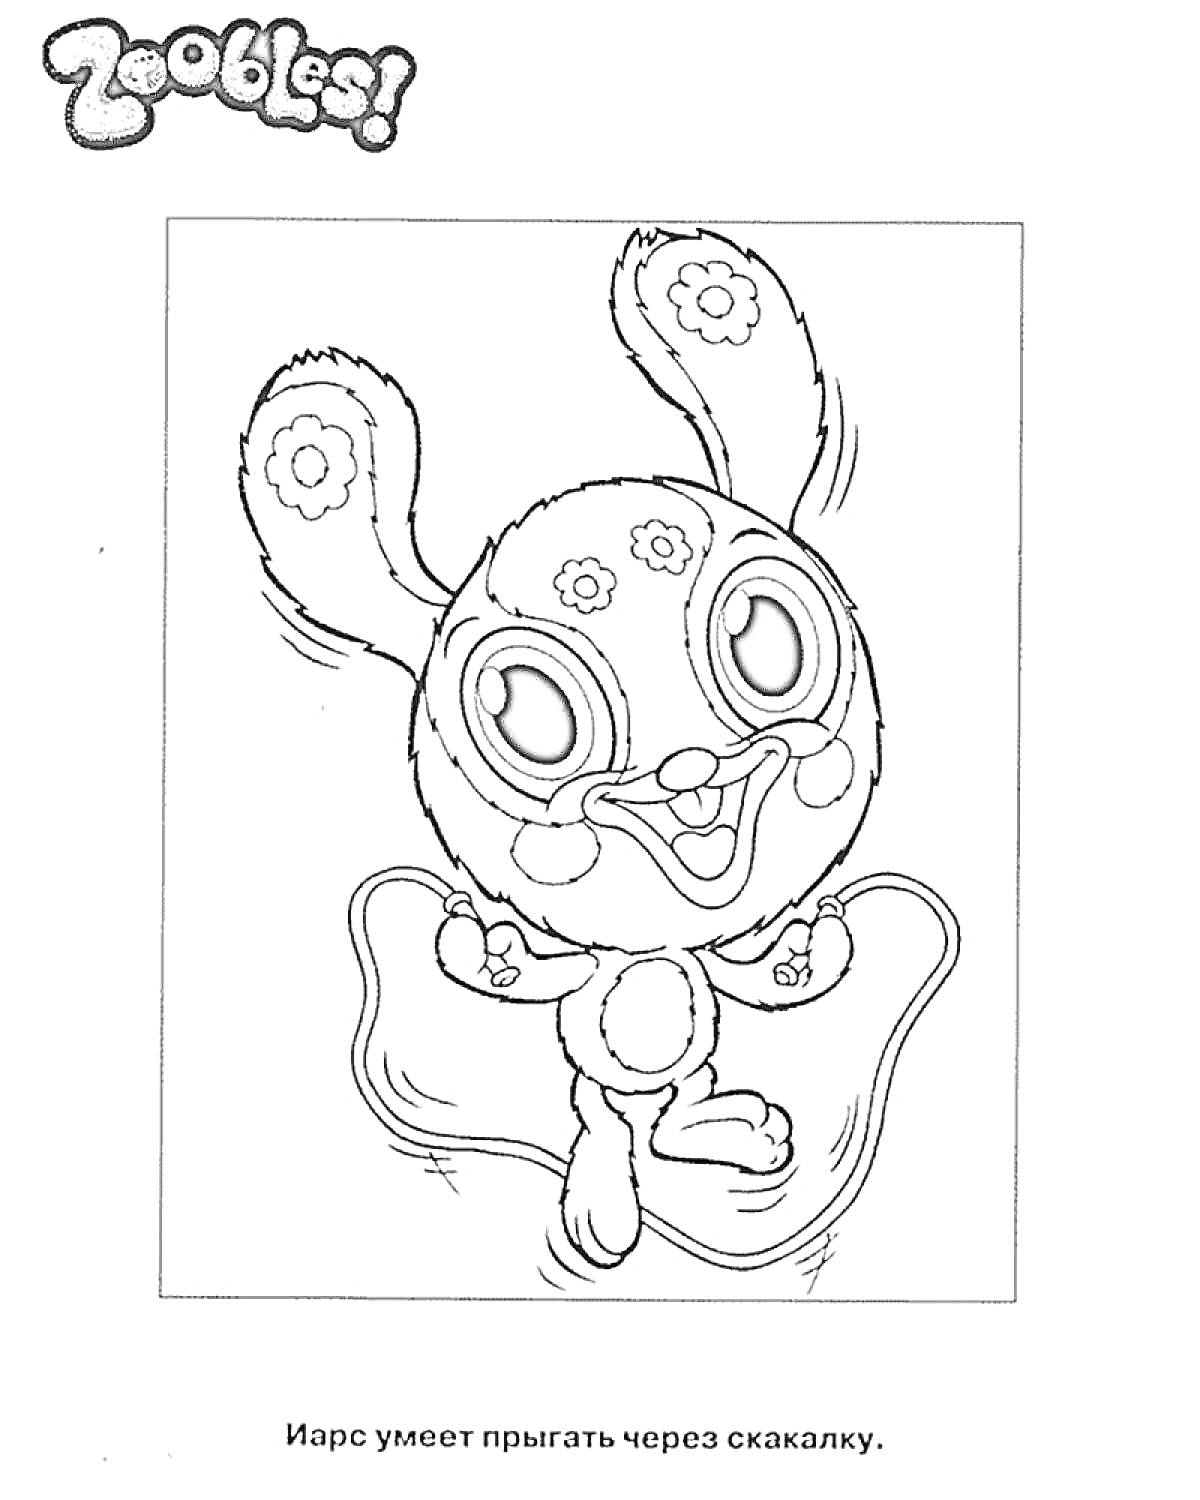 Раскраска Зублс с ушками в форме цветков, прыгающий через скакалку.